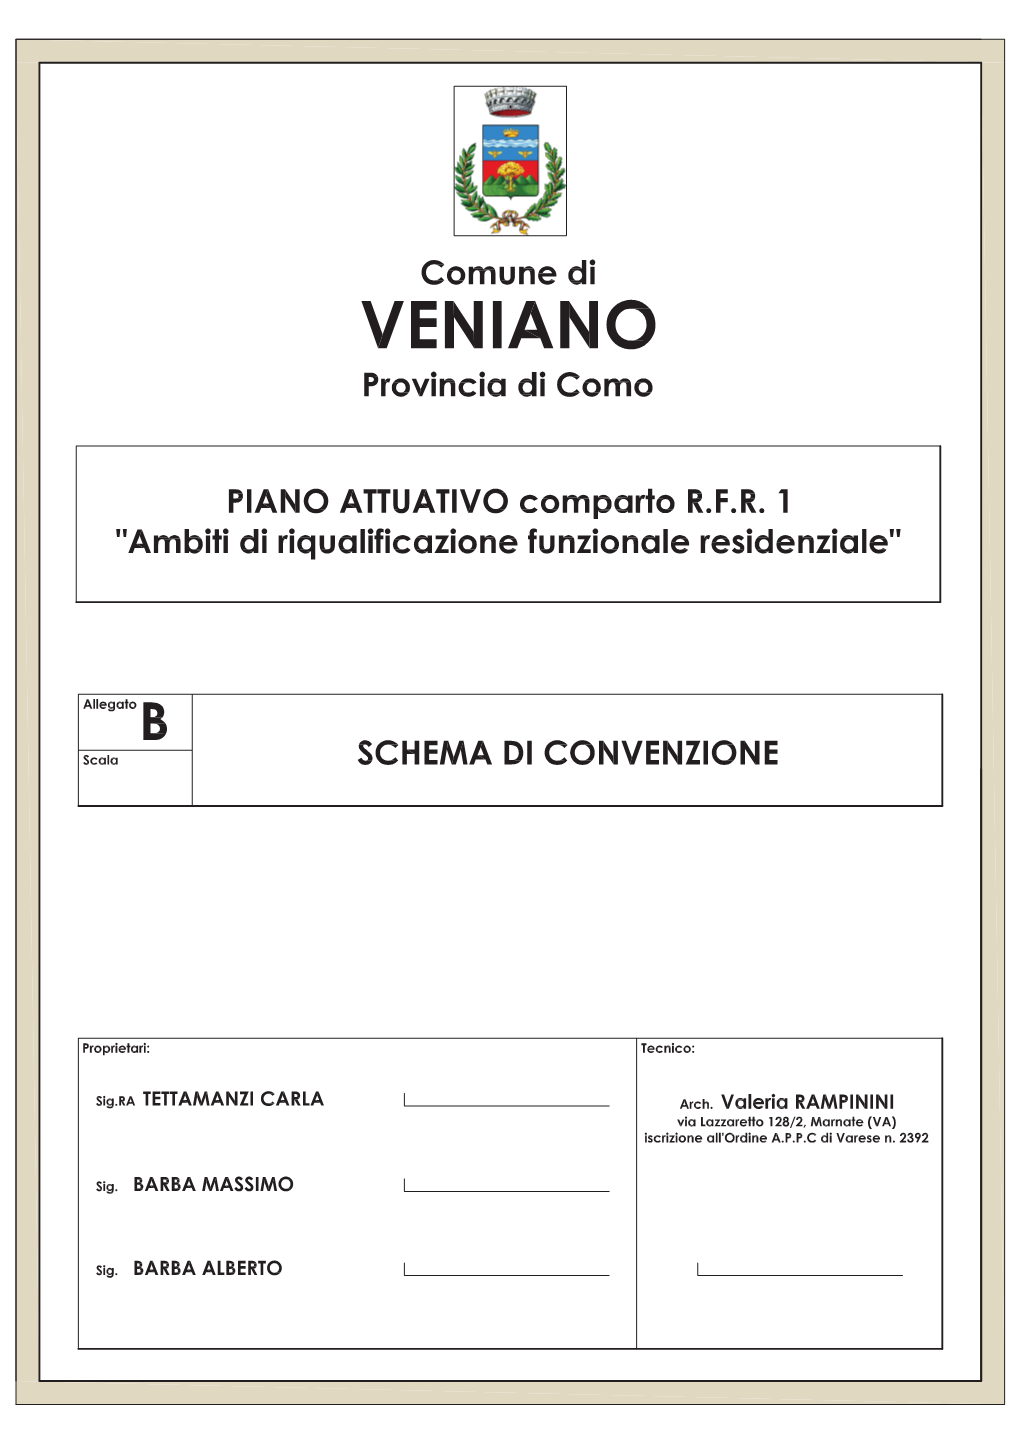 COMUNE DI VENIANO Provincia Di Como ATTO PUBBLICO DI CONVENZIONE URBANISTICA (Art